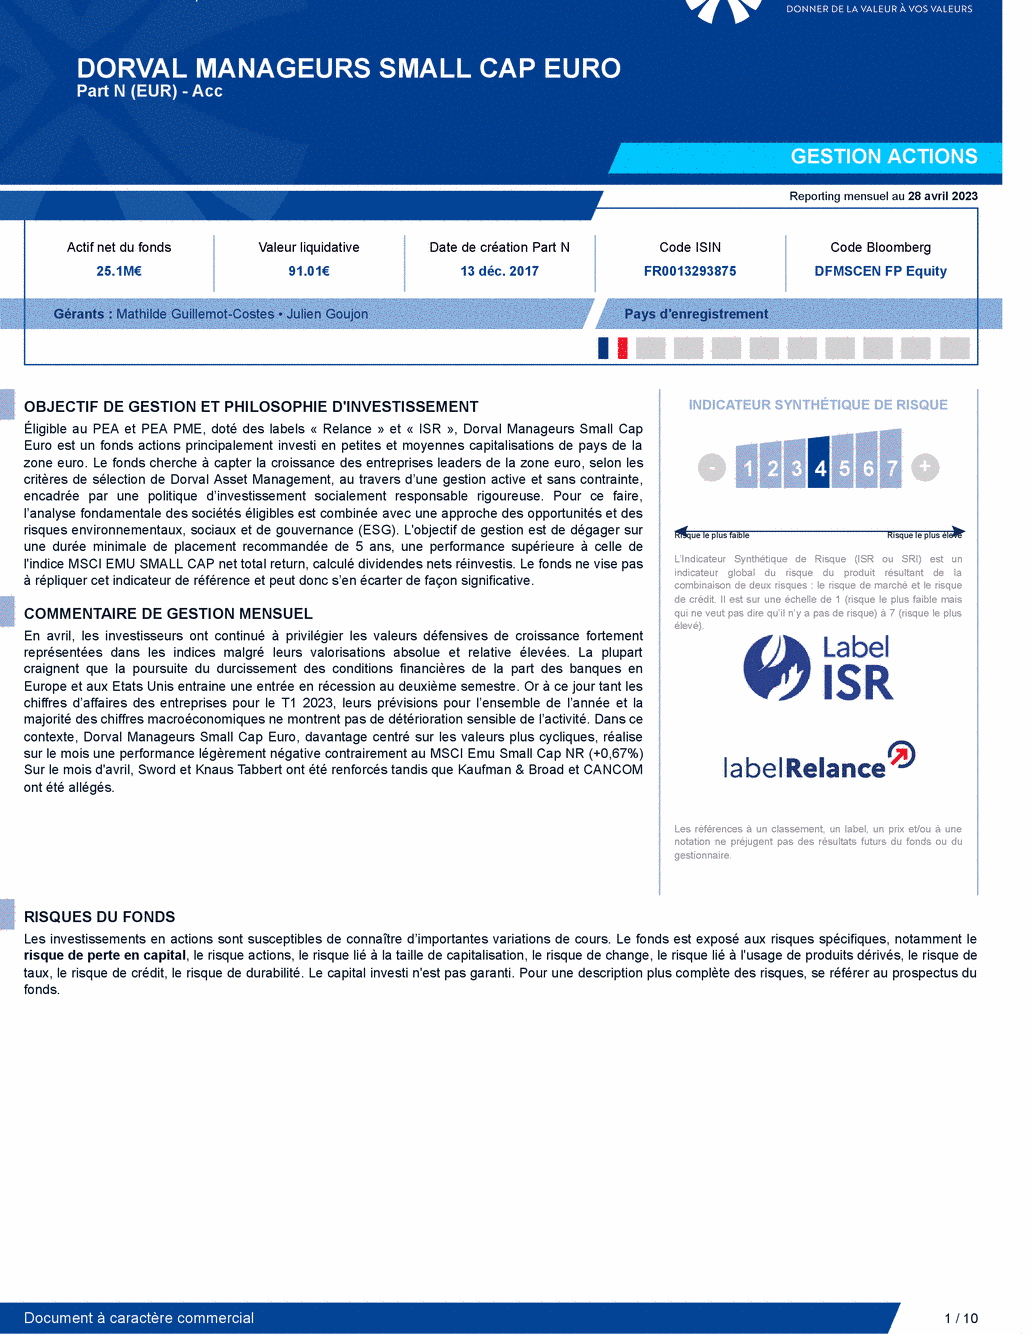 Reporting DORVAL MANAGEURS SMALL CAP EURO N - 28/04/2023 - Français